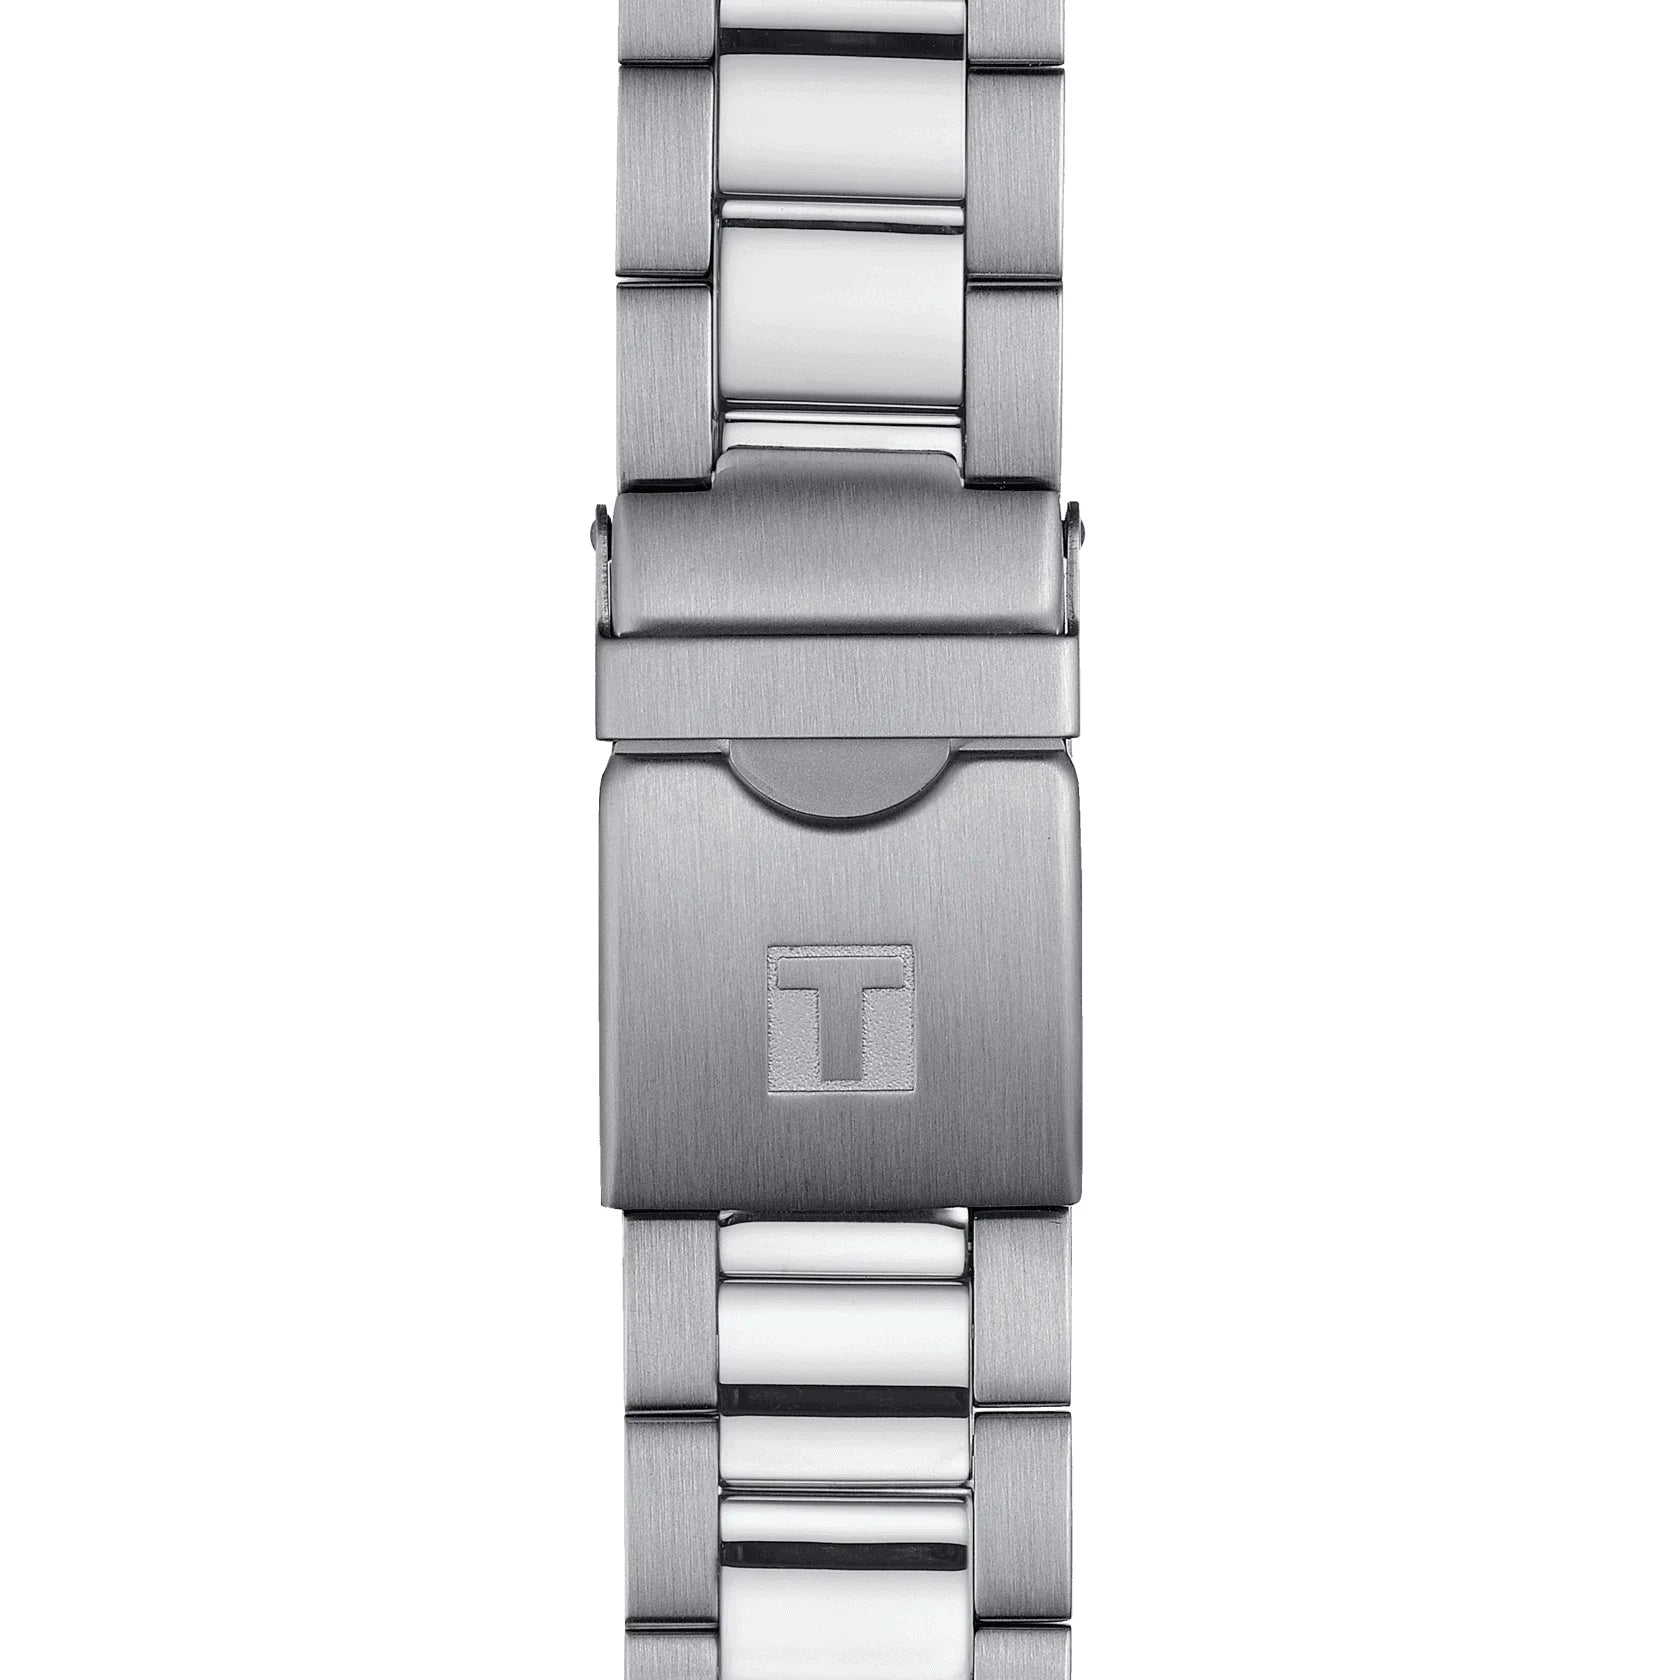 Tissot Seastar 1000 Chronograph Herrenarmbanduhr mit Edelstahl Armband und Schwarz Zifferblatt. Mit seinem Silber Farbe Armband sieht es sehr stilvoll aus.